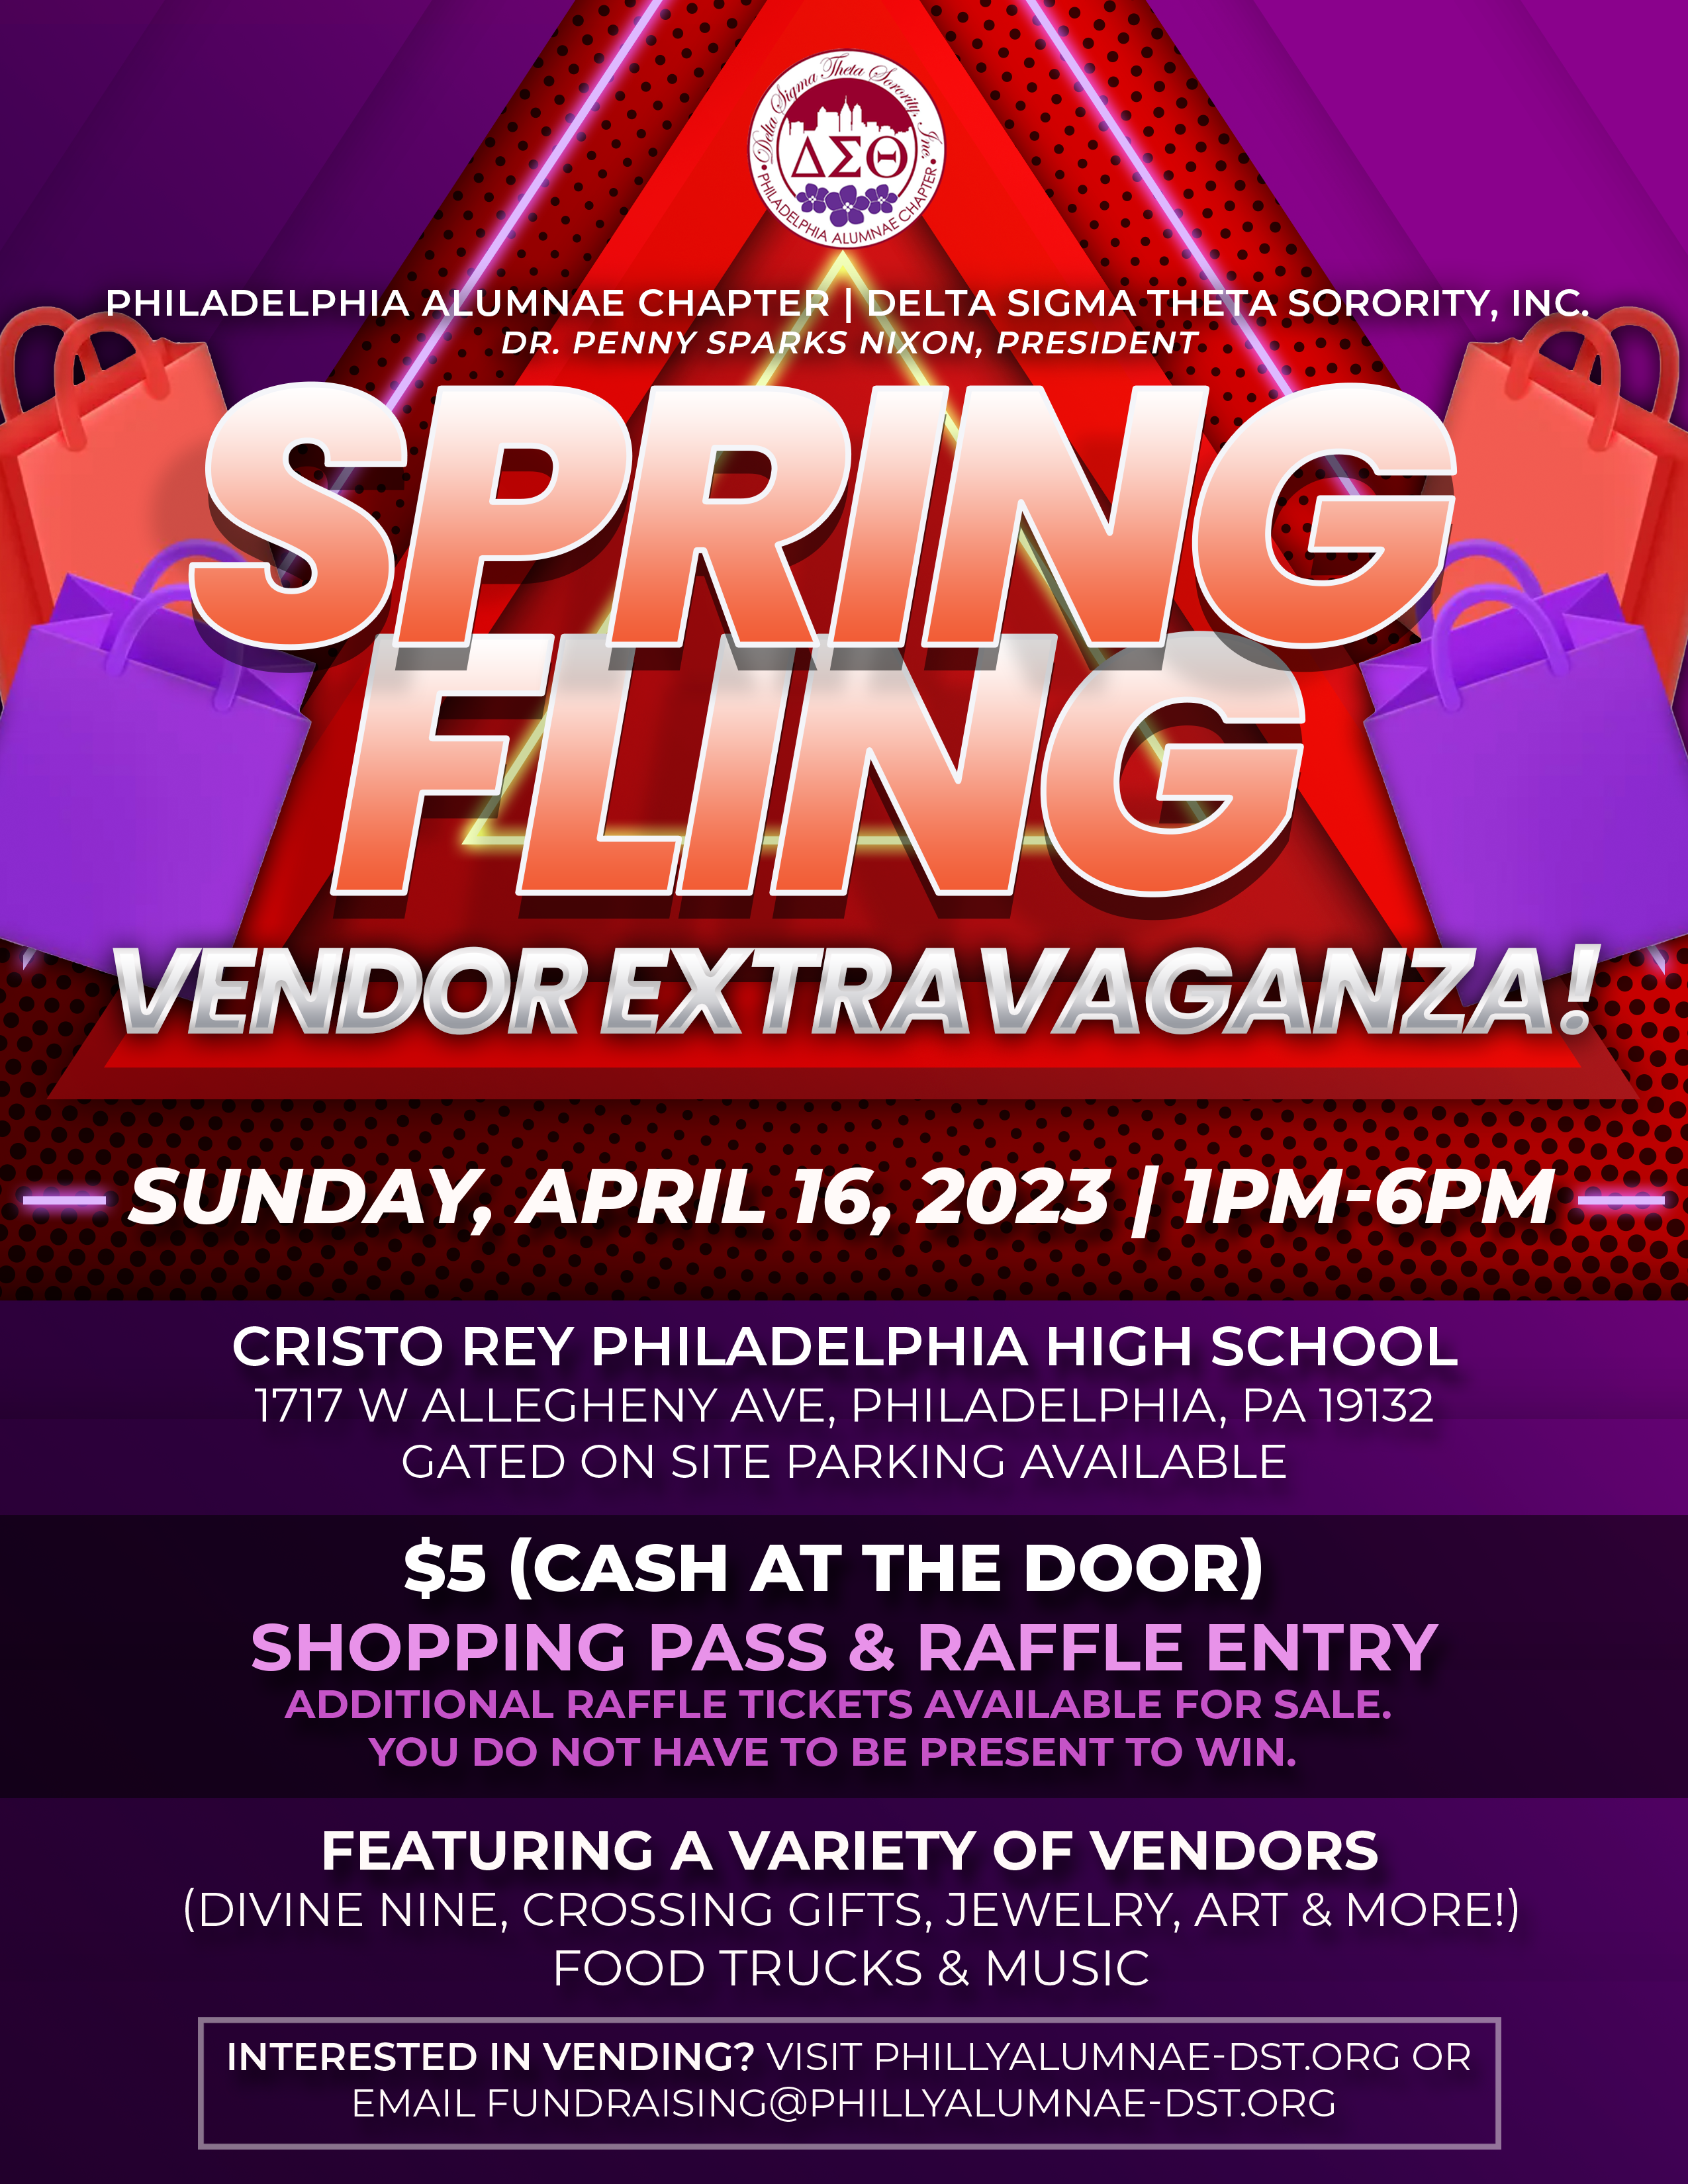 Spring Fling Vendor Extravaganza